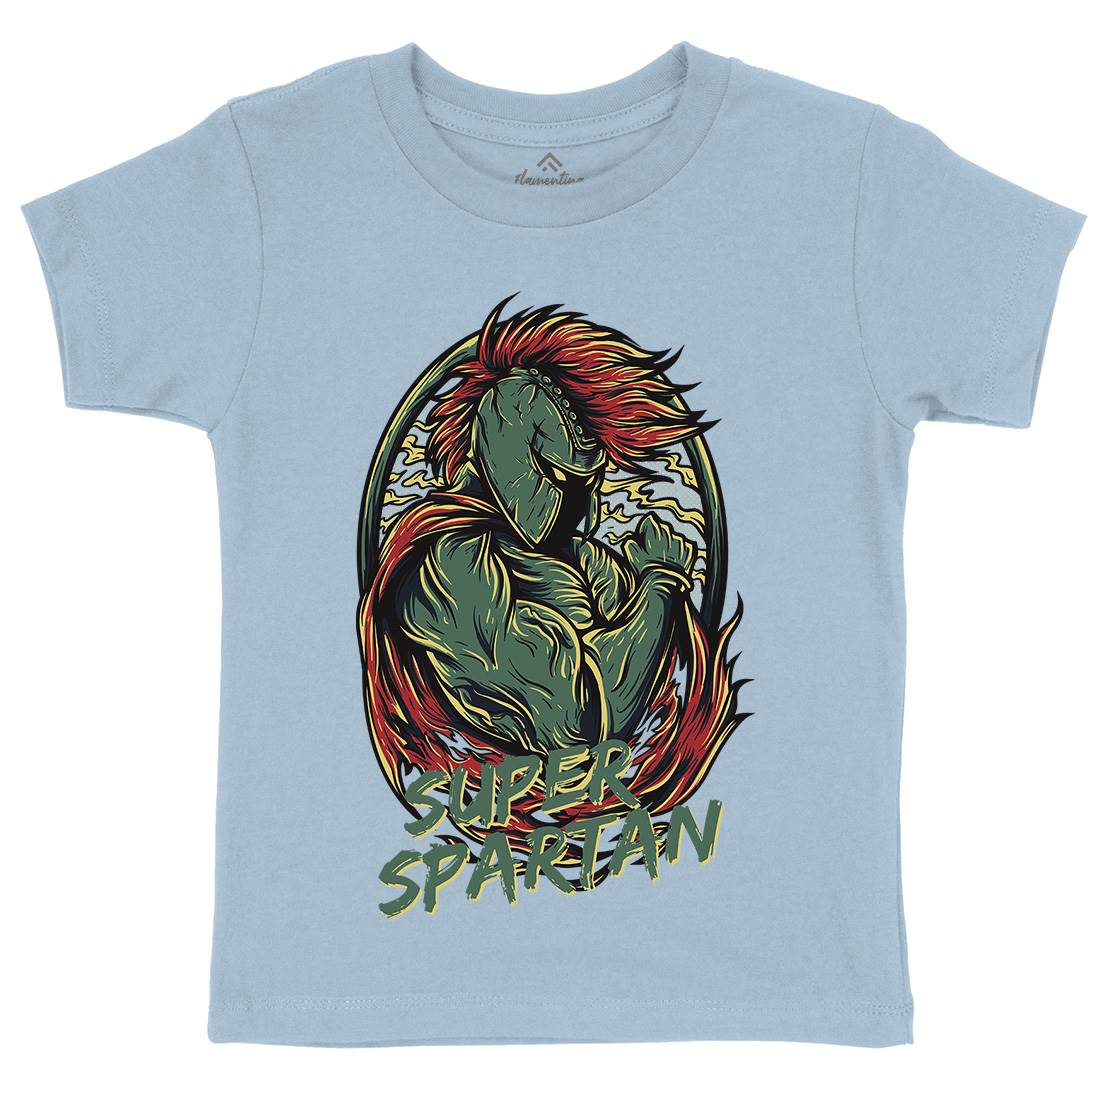 Super Spartan Kids Organic Crew Neck T-Shirt Warriors D843